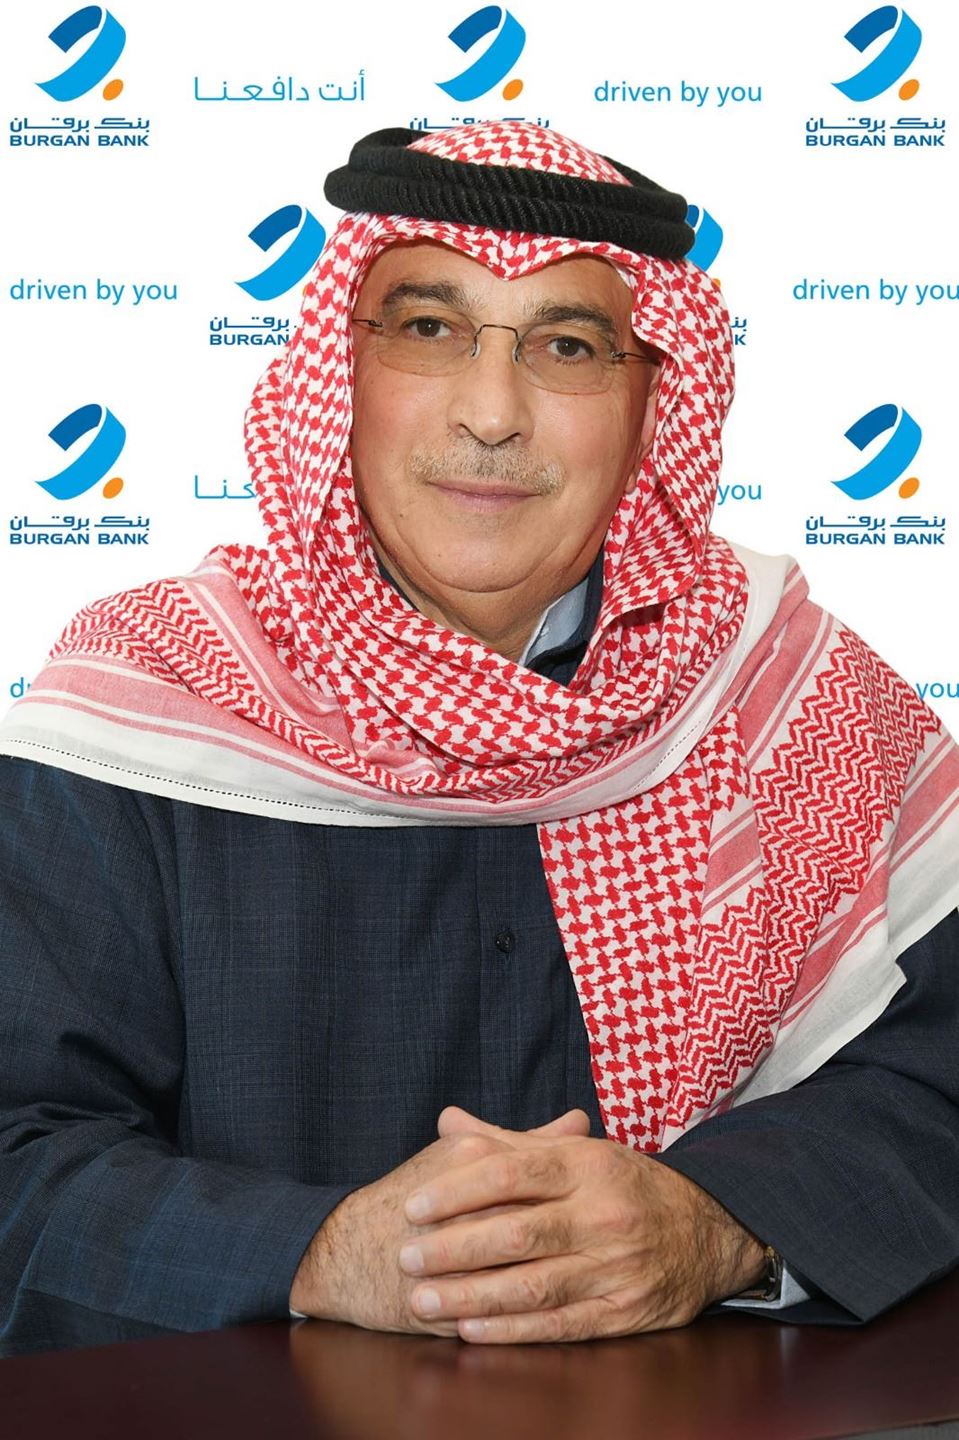 السيد/ مسعود محمود جوهر حيات، نائب رئيس مجلس الإدارة ورئيس الجهاز التنفيذي لمجموعة بنك برقان